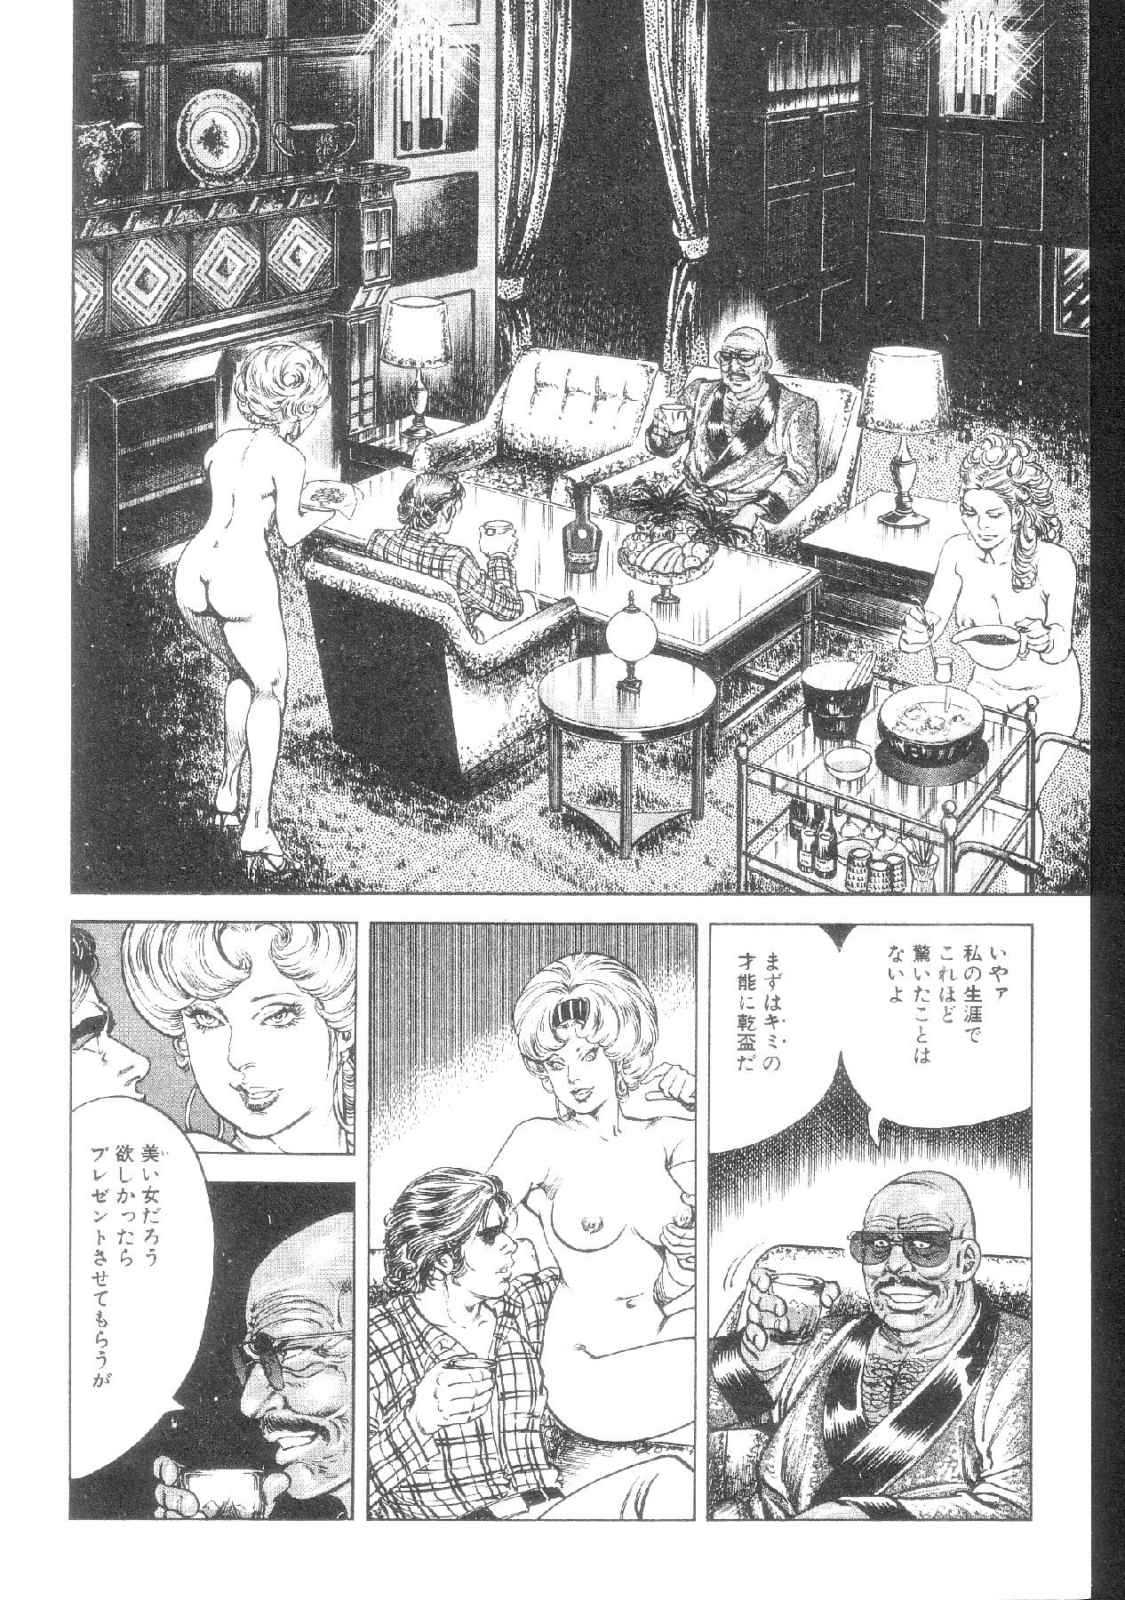 [Kano Seisaku, Koike Kazuo] Jikken Ningyou Dummy Oscar Vol.08 [叶精作, 小池一夫] 実験人形ダミー・オスカー 第08巻